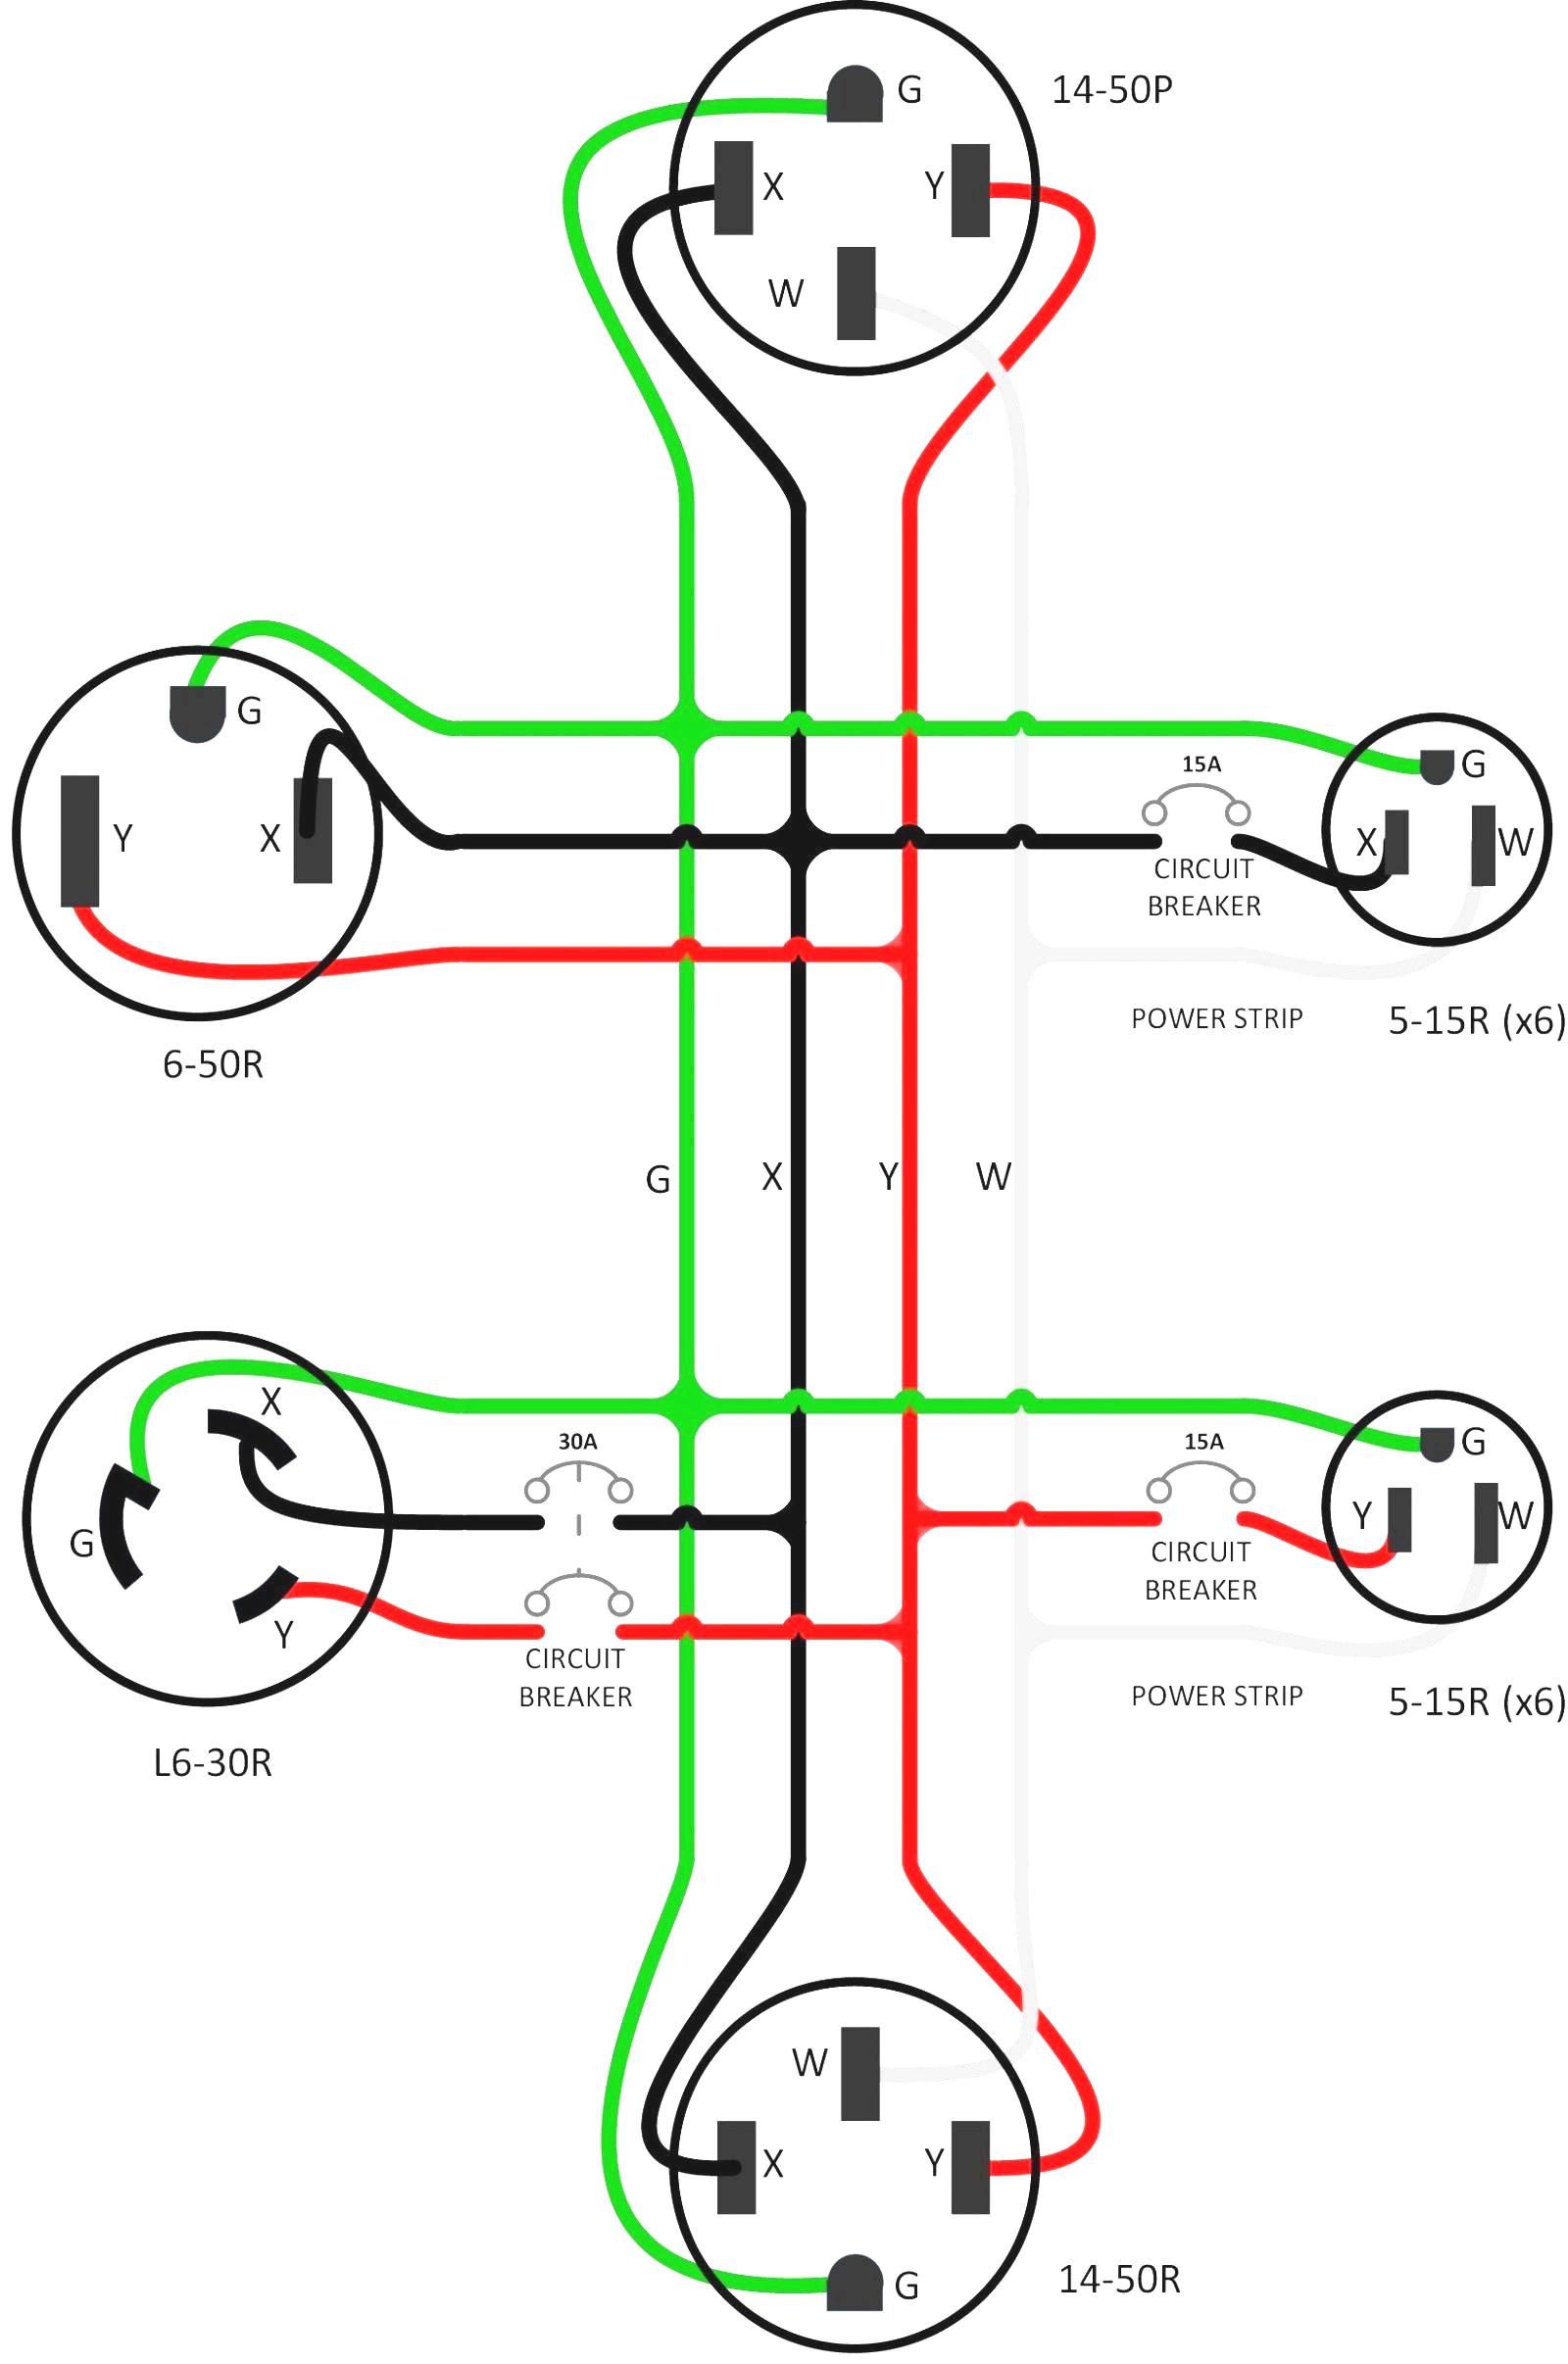 L6 30P Wiring Diagram | Wiring Diagram - L14-30R Wiring Diagram